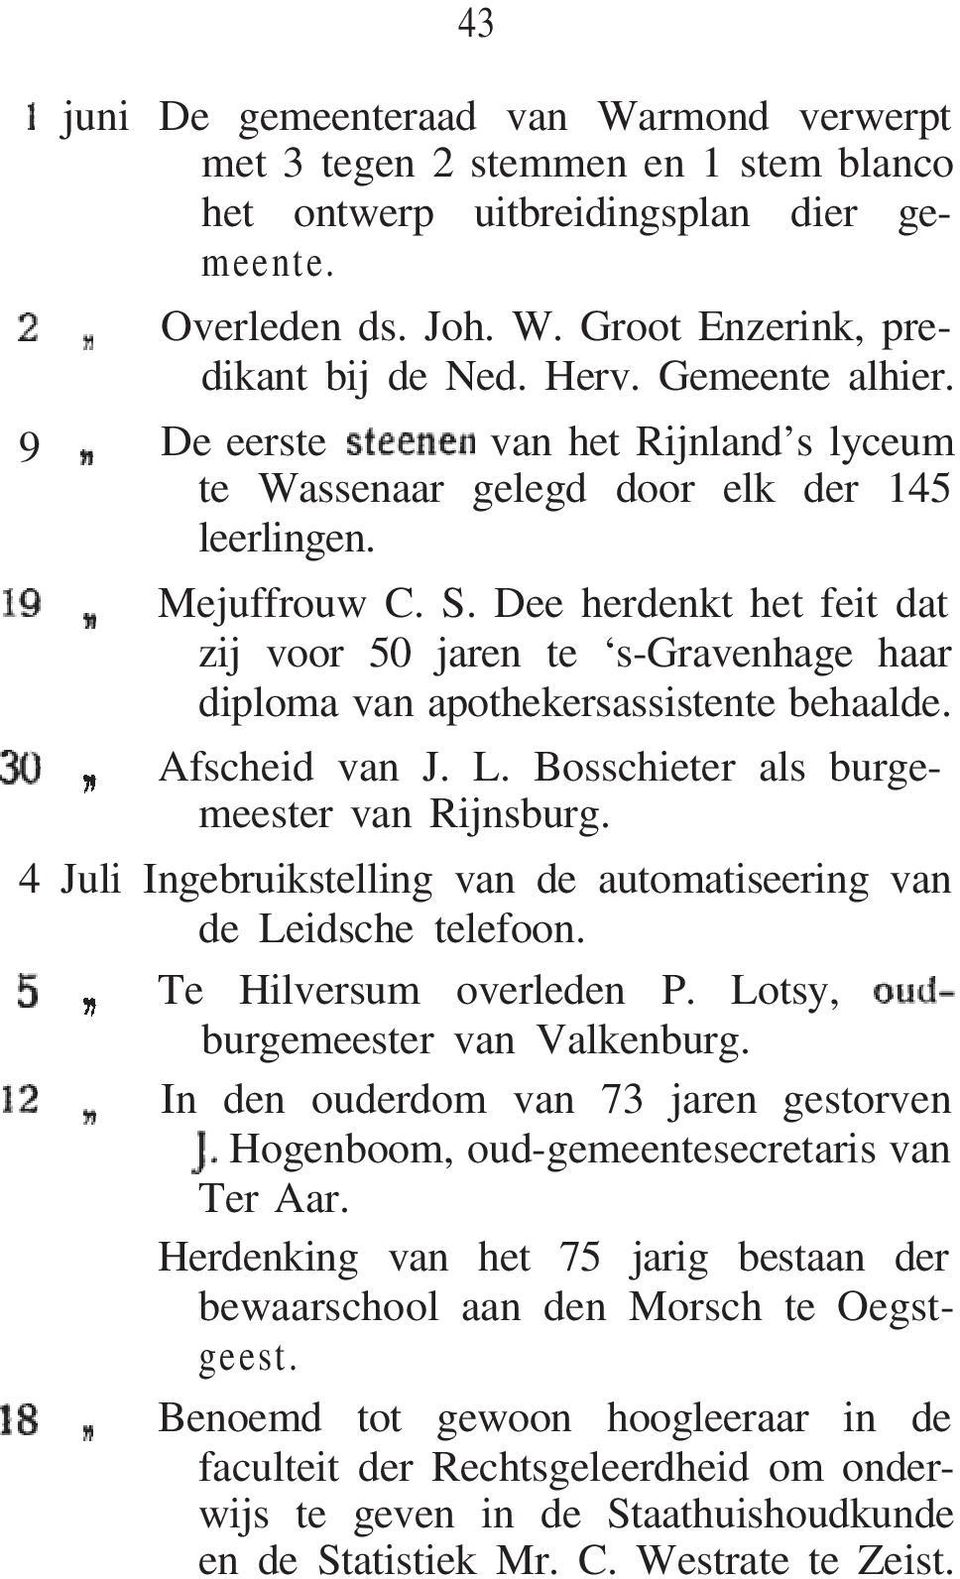 Dee herdenkt het feit dat zij voor 50 jaren te s-gravenhage haar diploma van apothekersassistente behaalde. Afscheid van J. L. Bosschieter als burgemeester van Rijnsburg.